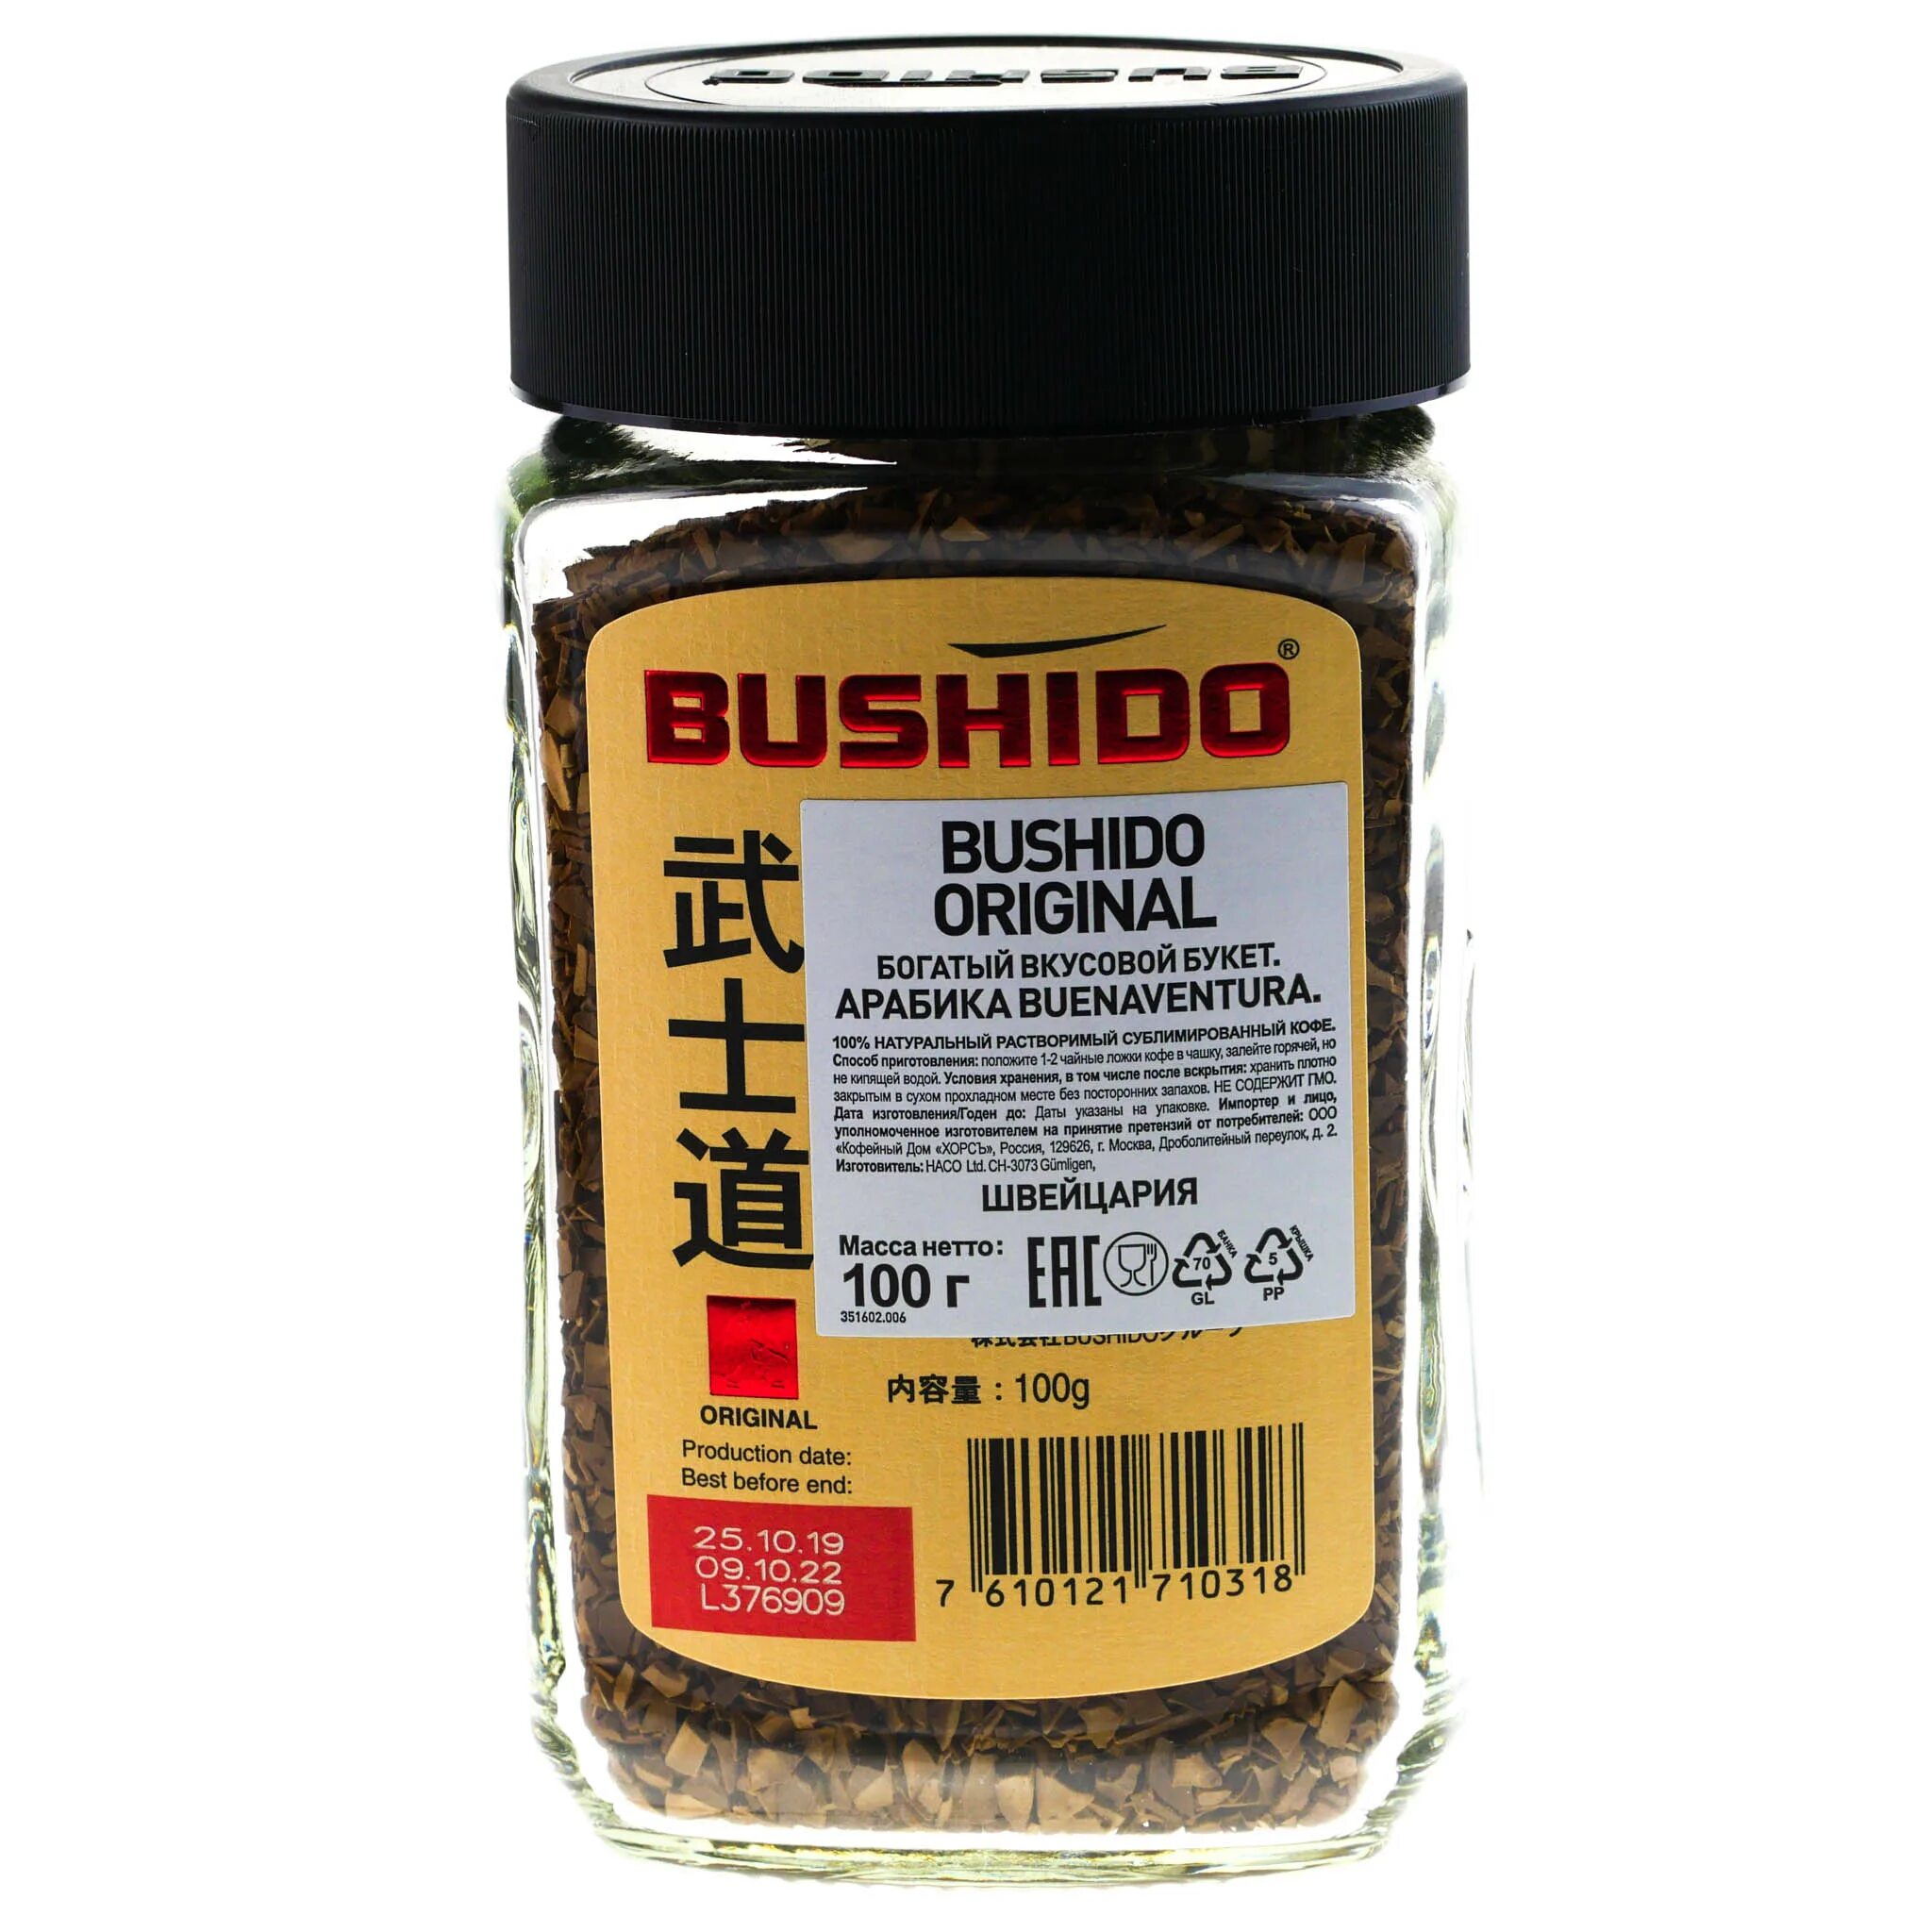 Купить кофе оригинал. Кофе растворимый Bushido Original 100г. Кофе растворимый Бушидо 100г. Bushido Original кофе растворимый 100. Кофе "Bushido" оригинал 100г.